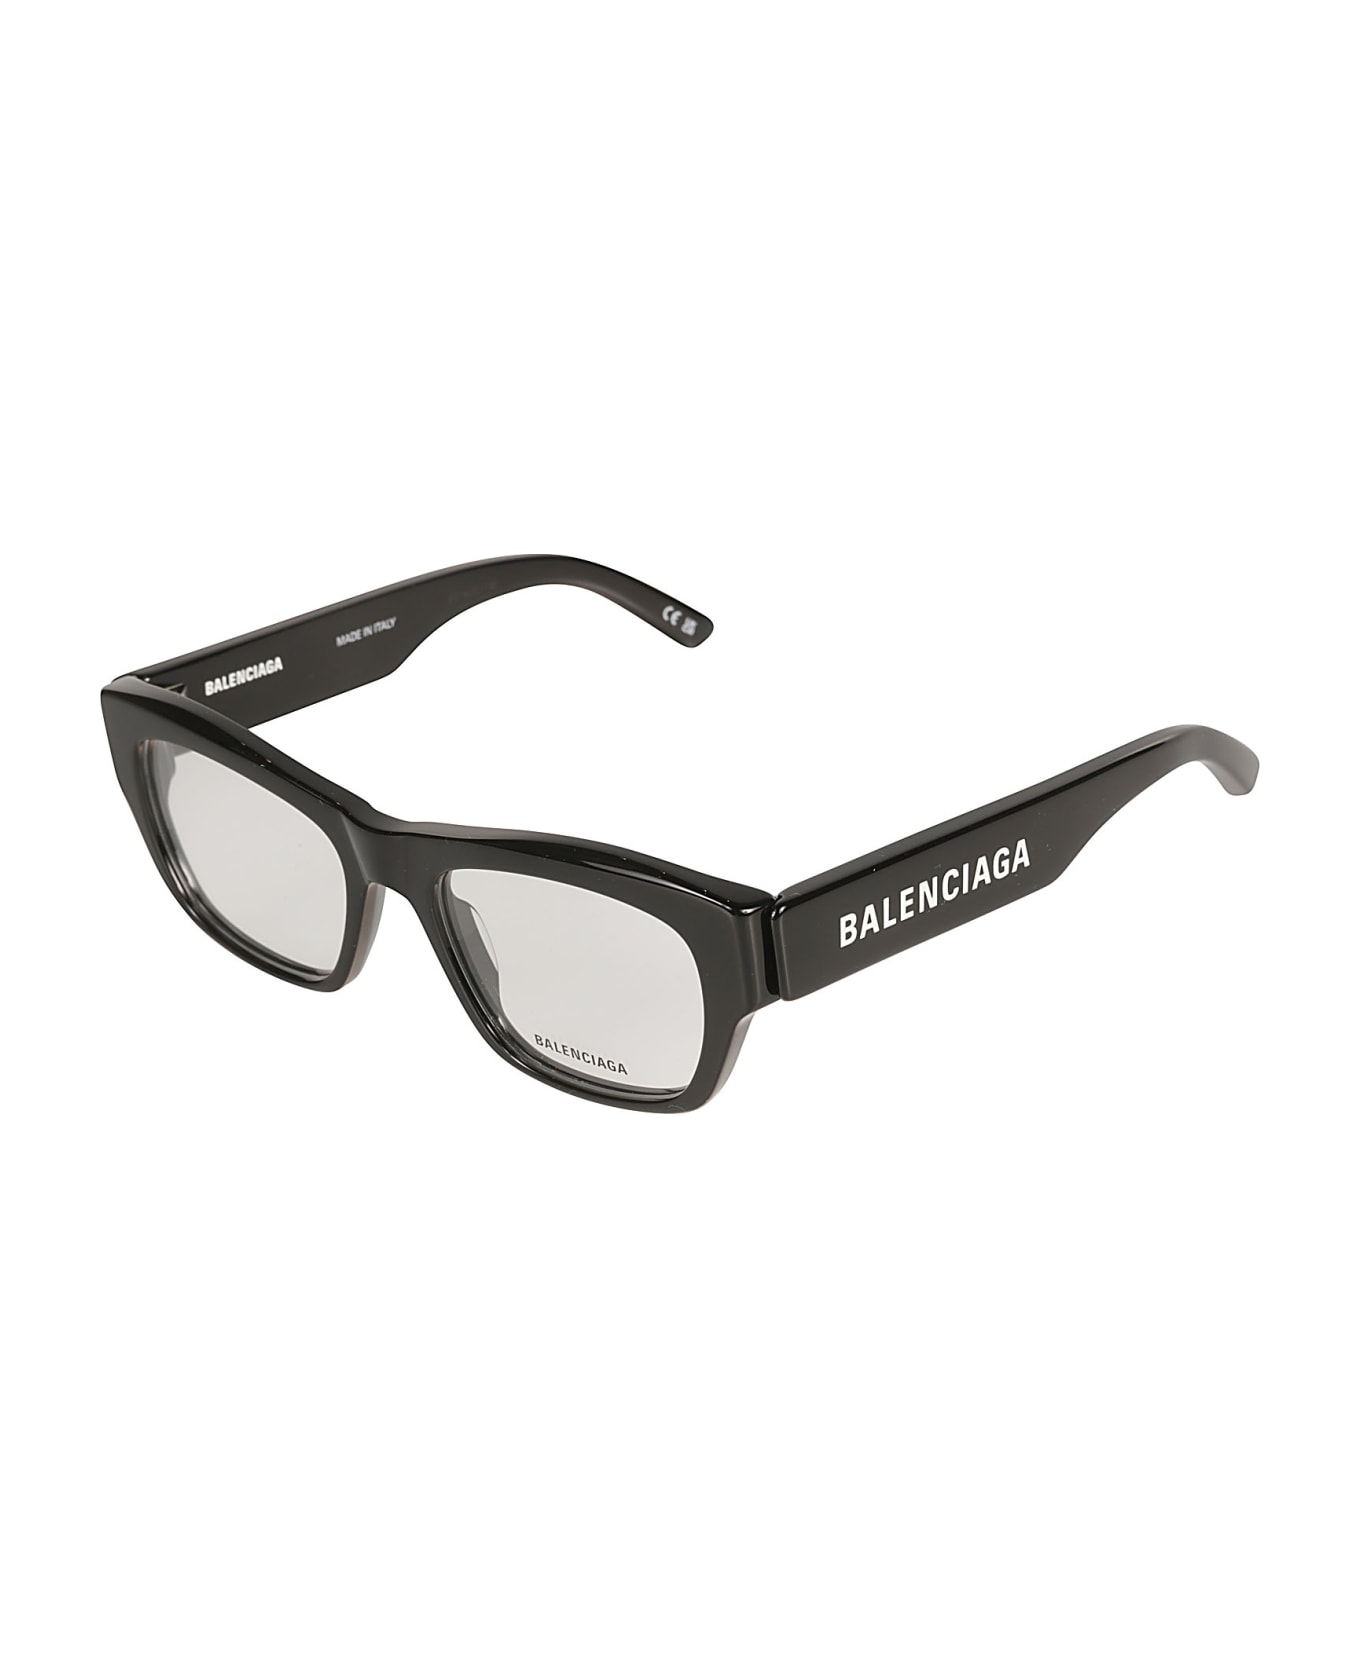 Balenciaga Eyewear Logo Sided Square Frame Glasses - Black/Transparent アイウェア